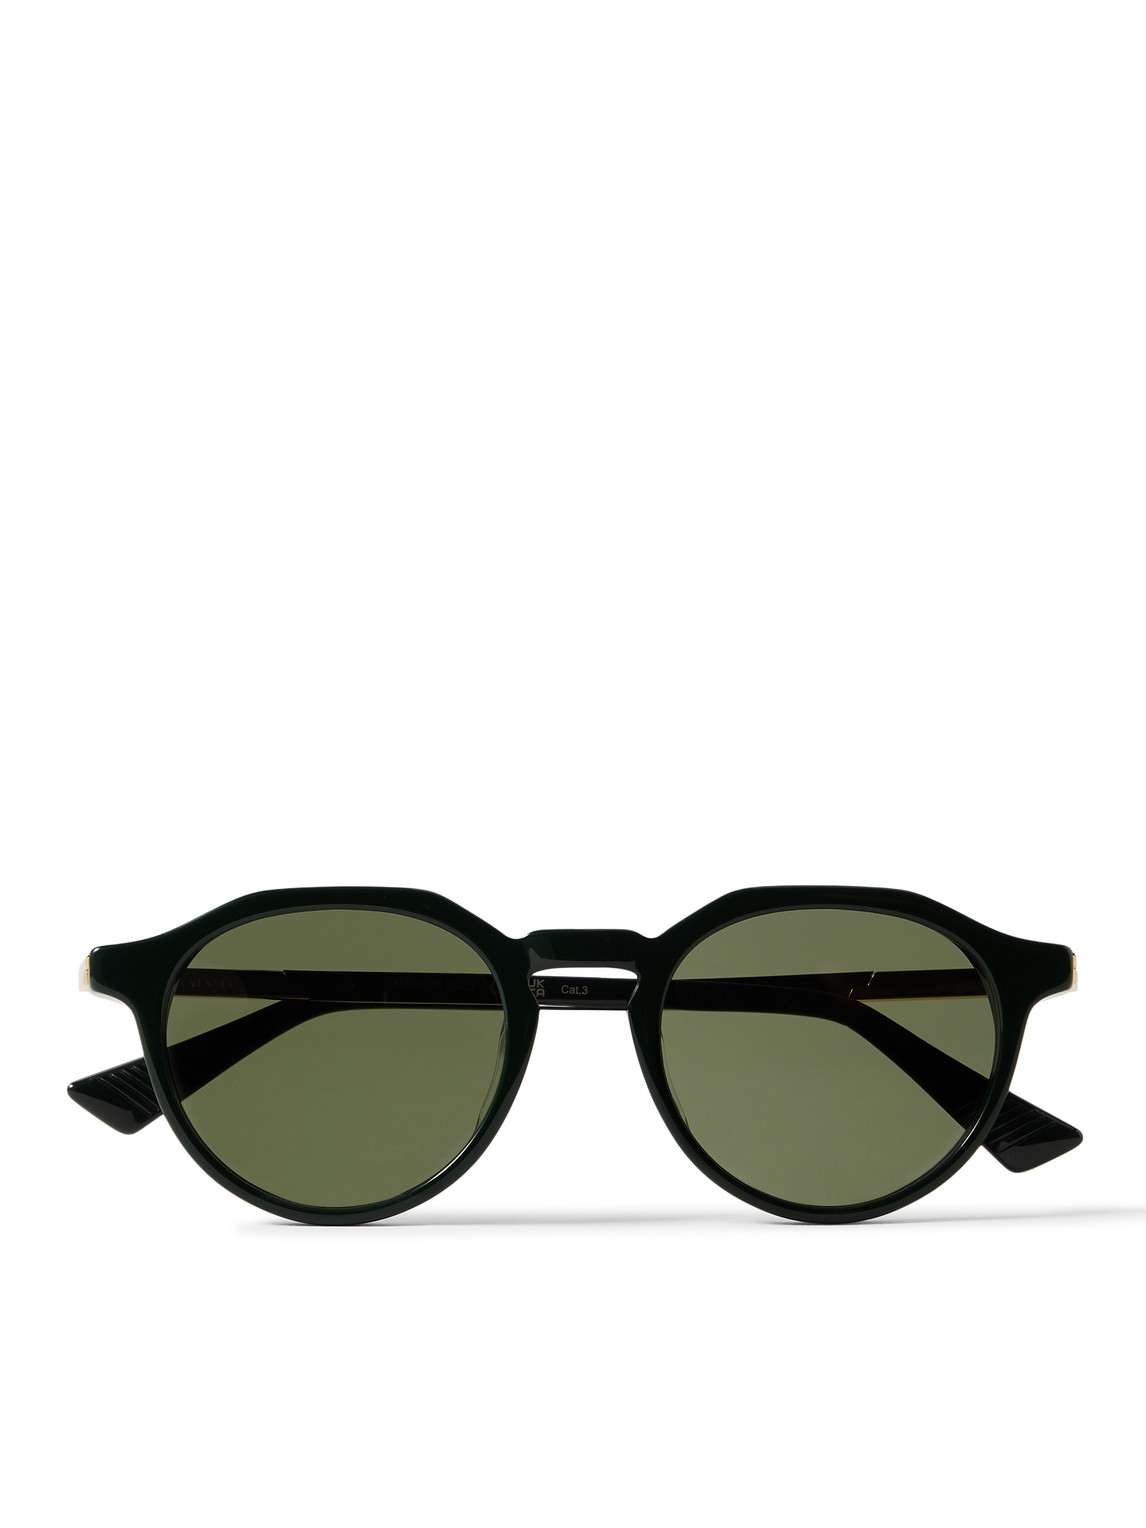 Bottega Veneta - Round-Frame Acetate Sunglasses - Men - Green von Bottega Veneta